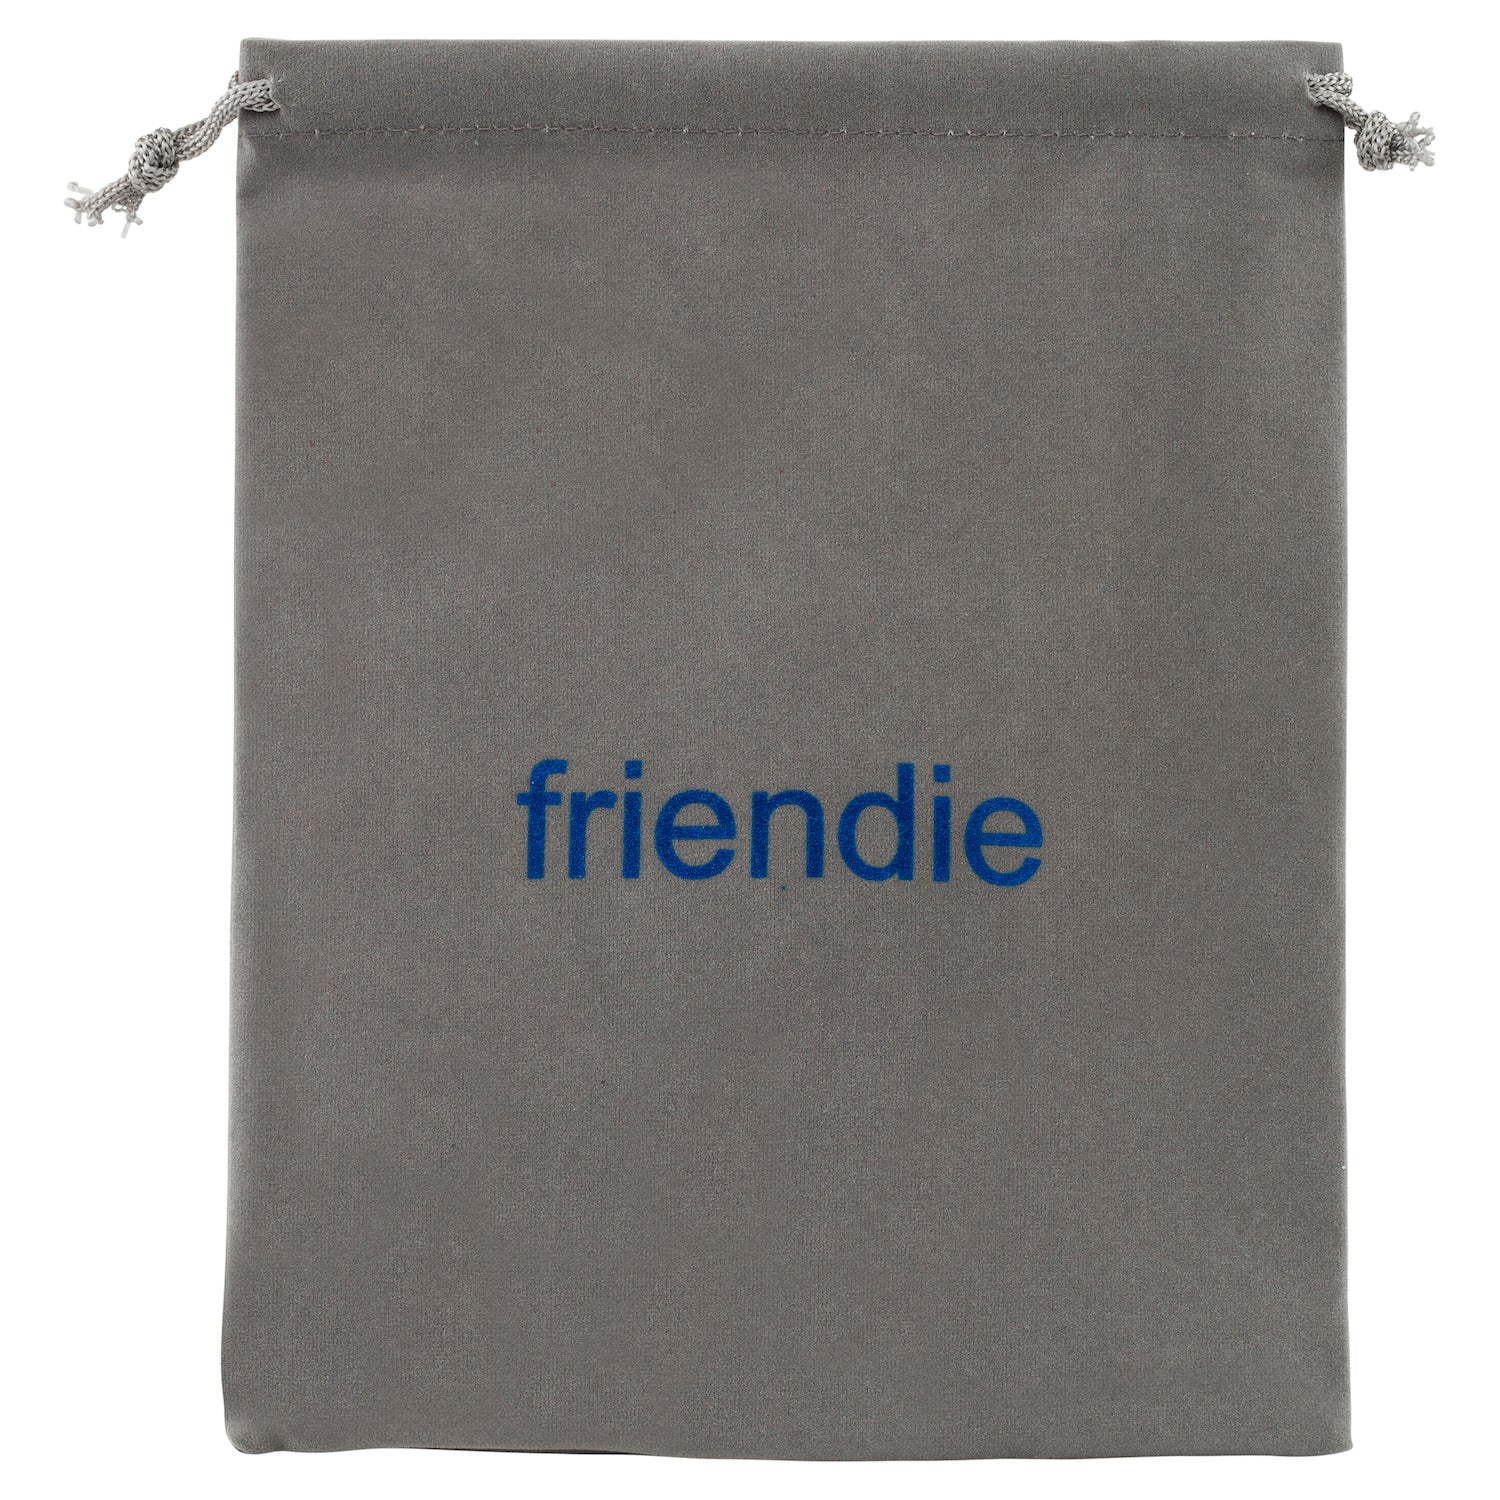 Friendie Grey Gift Bag (Large)